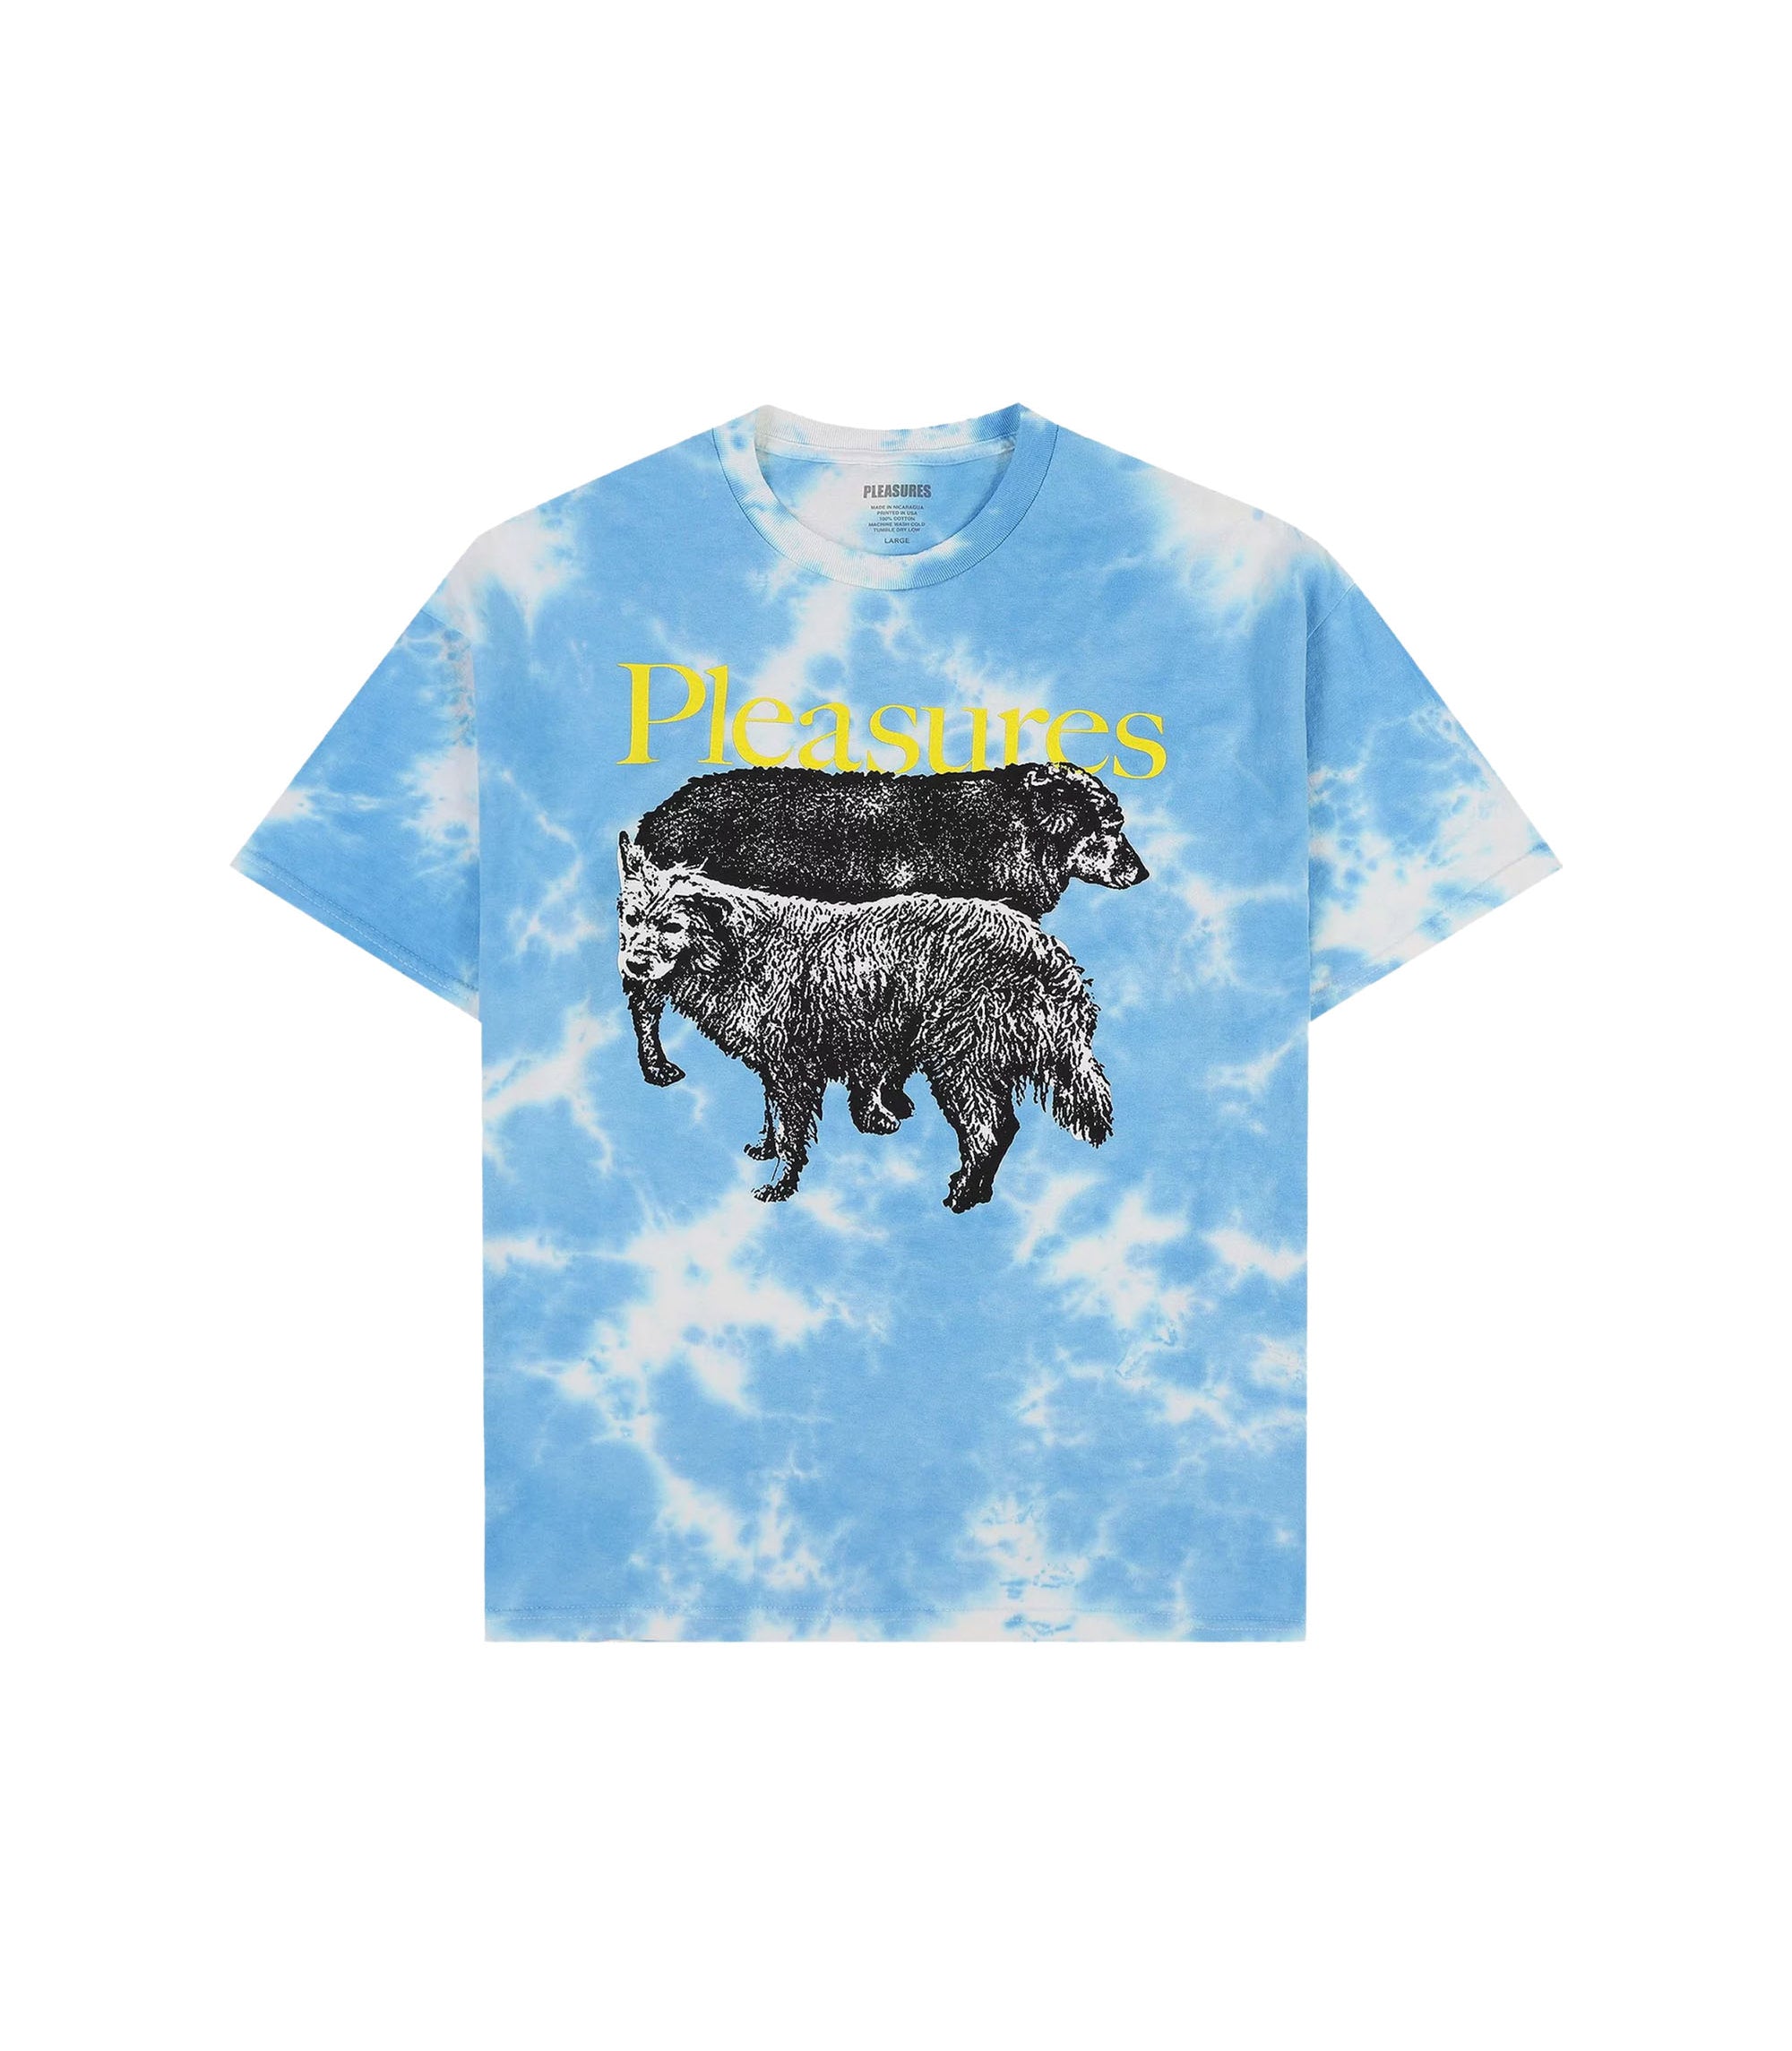 Wet Dogs T-shirt - Blue Dye